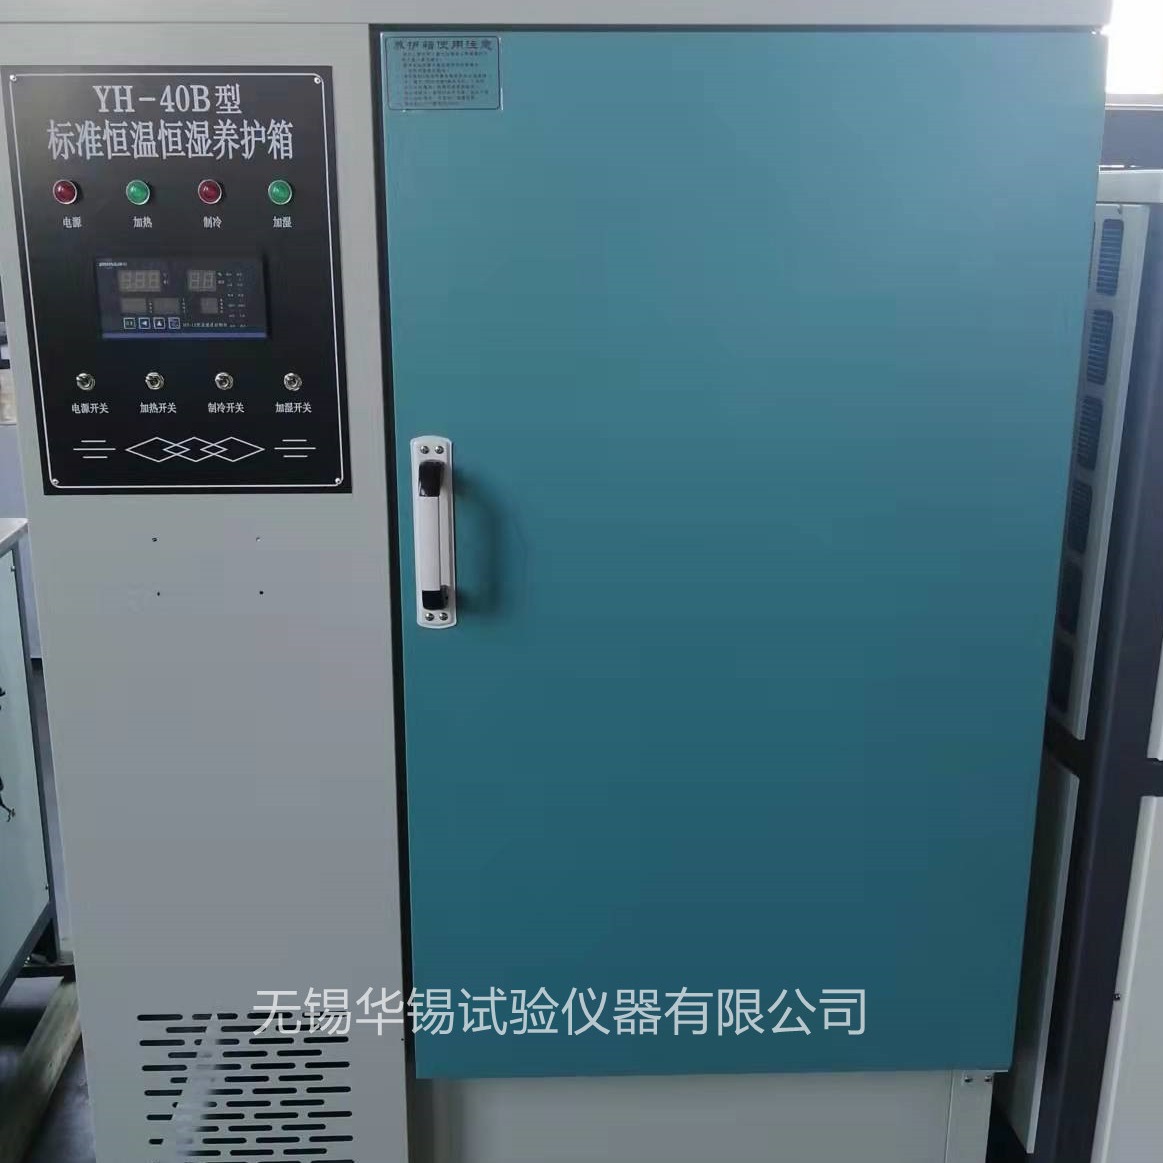 标准恒温恒湿养护箱 40B养护箱 40B标准养护箱 其他试验机